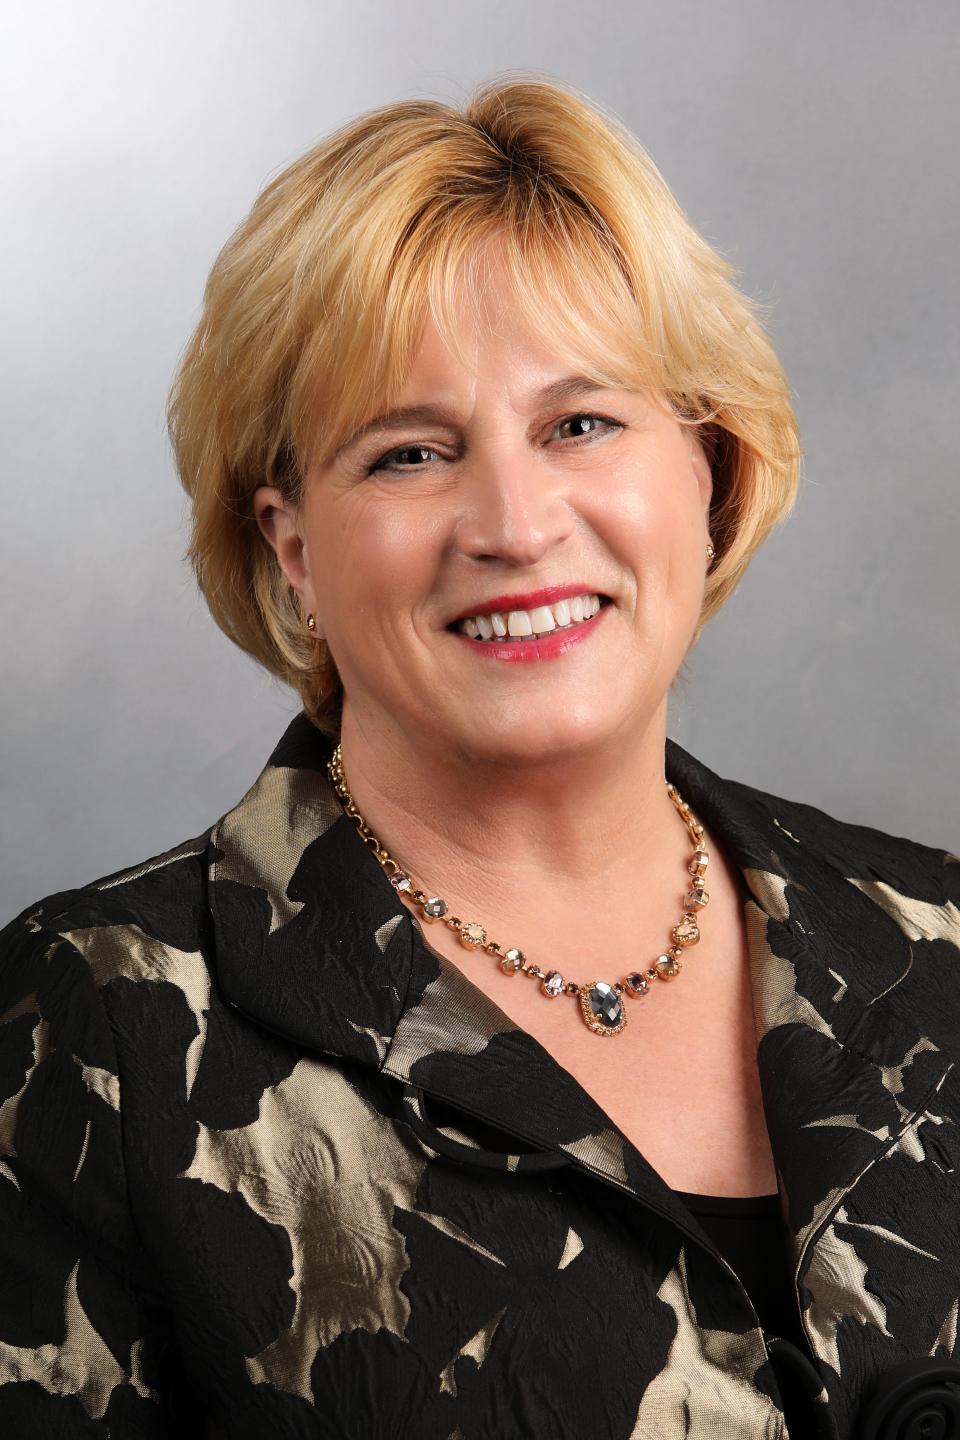 Karla Eslinger has been named the new Missouri Commissioner of Education. She will start June 1.